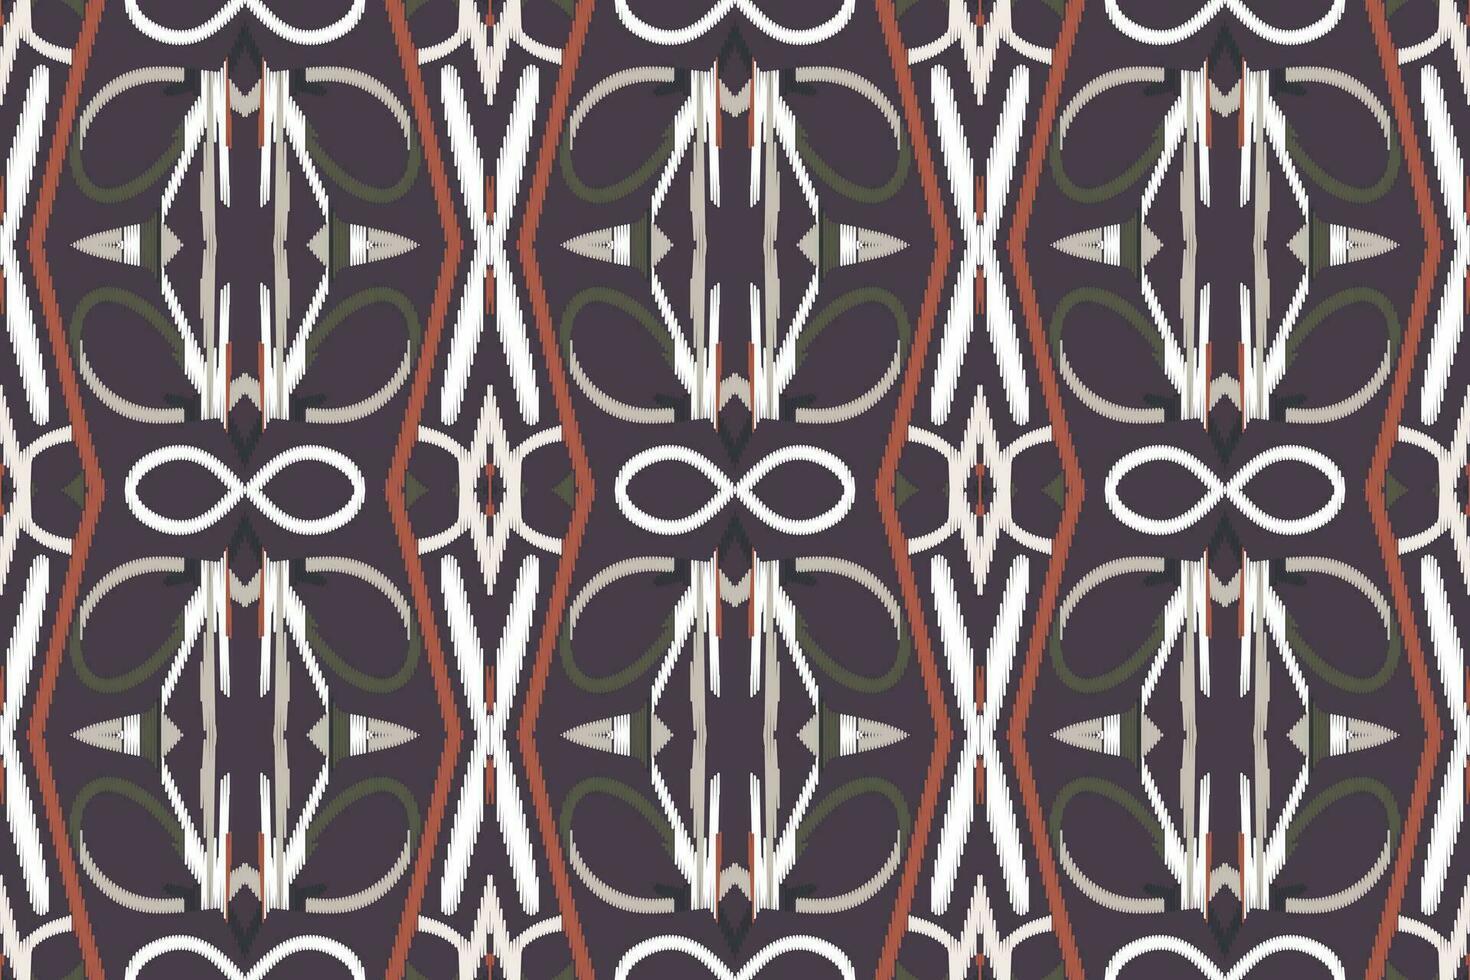 ikat damasco paisley bordado fundo. ikat padrões geométrico étnico oriental padronizar tradicional.asteca estilo abstrato vetor ilustração.design para textura,tecido,vestuário,embrulho,sarongue.